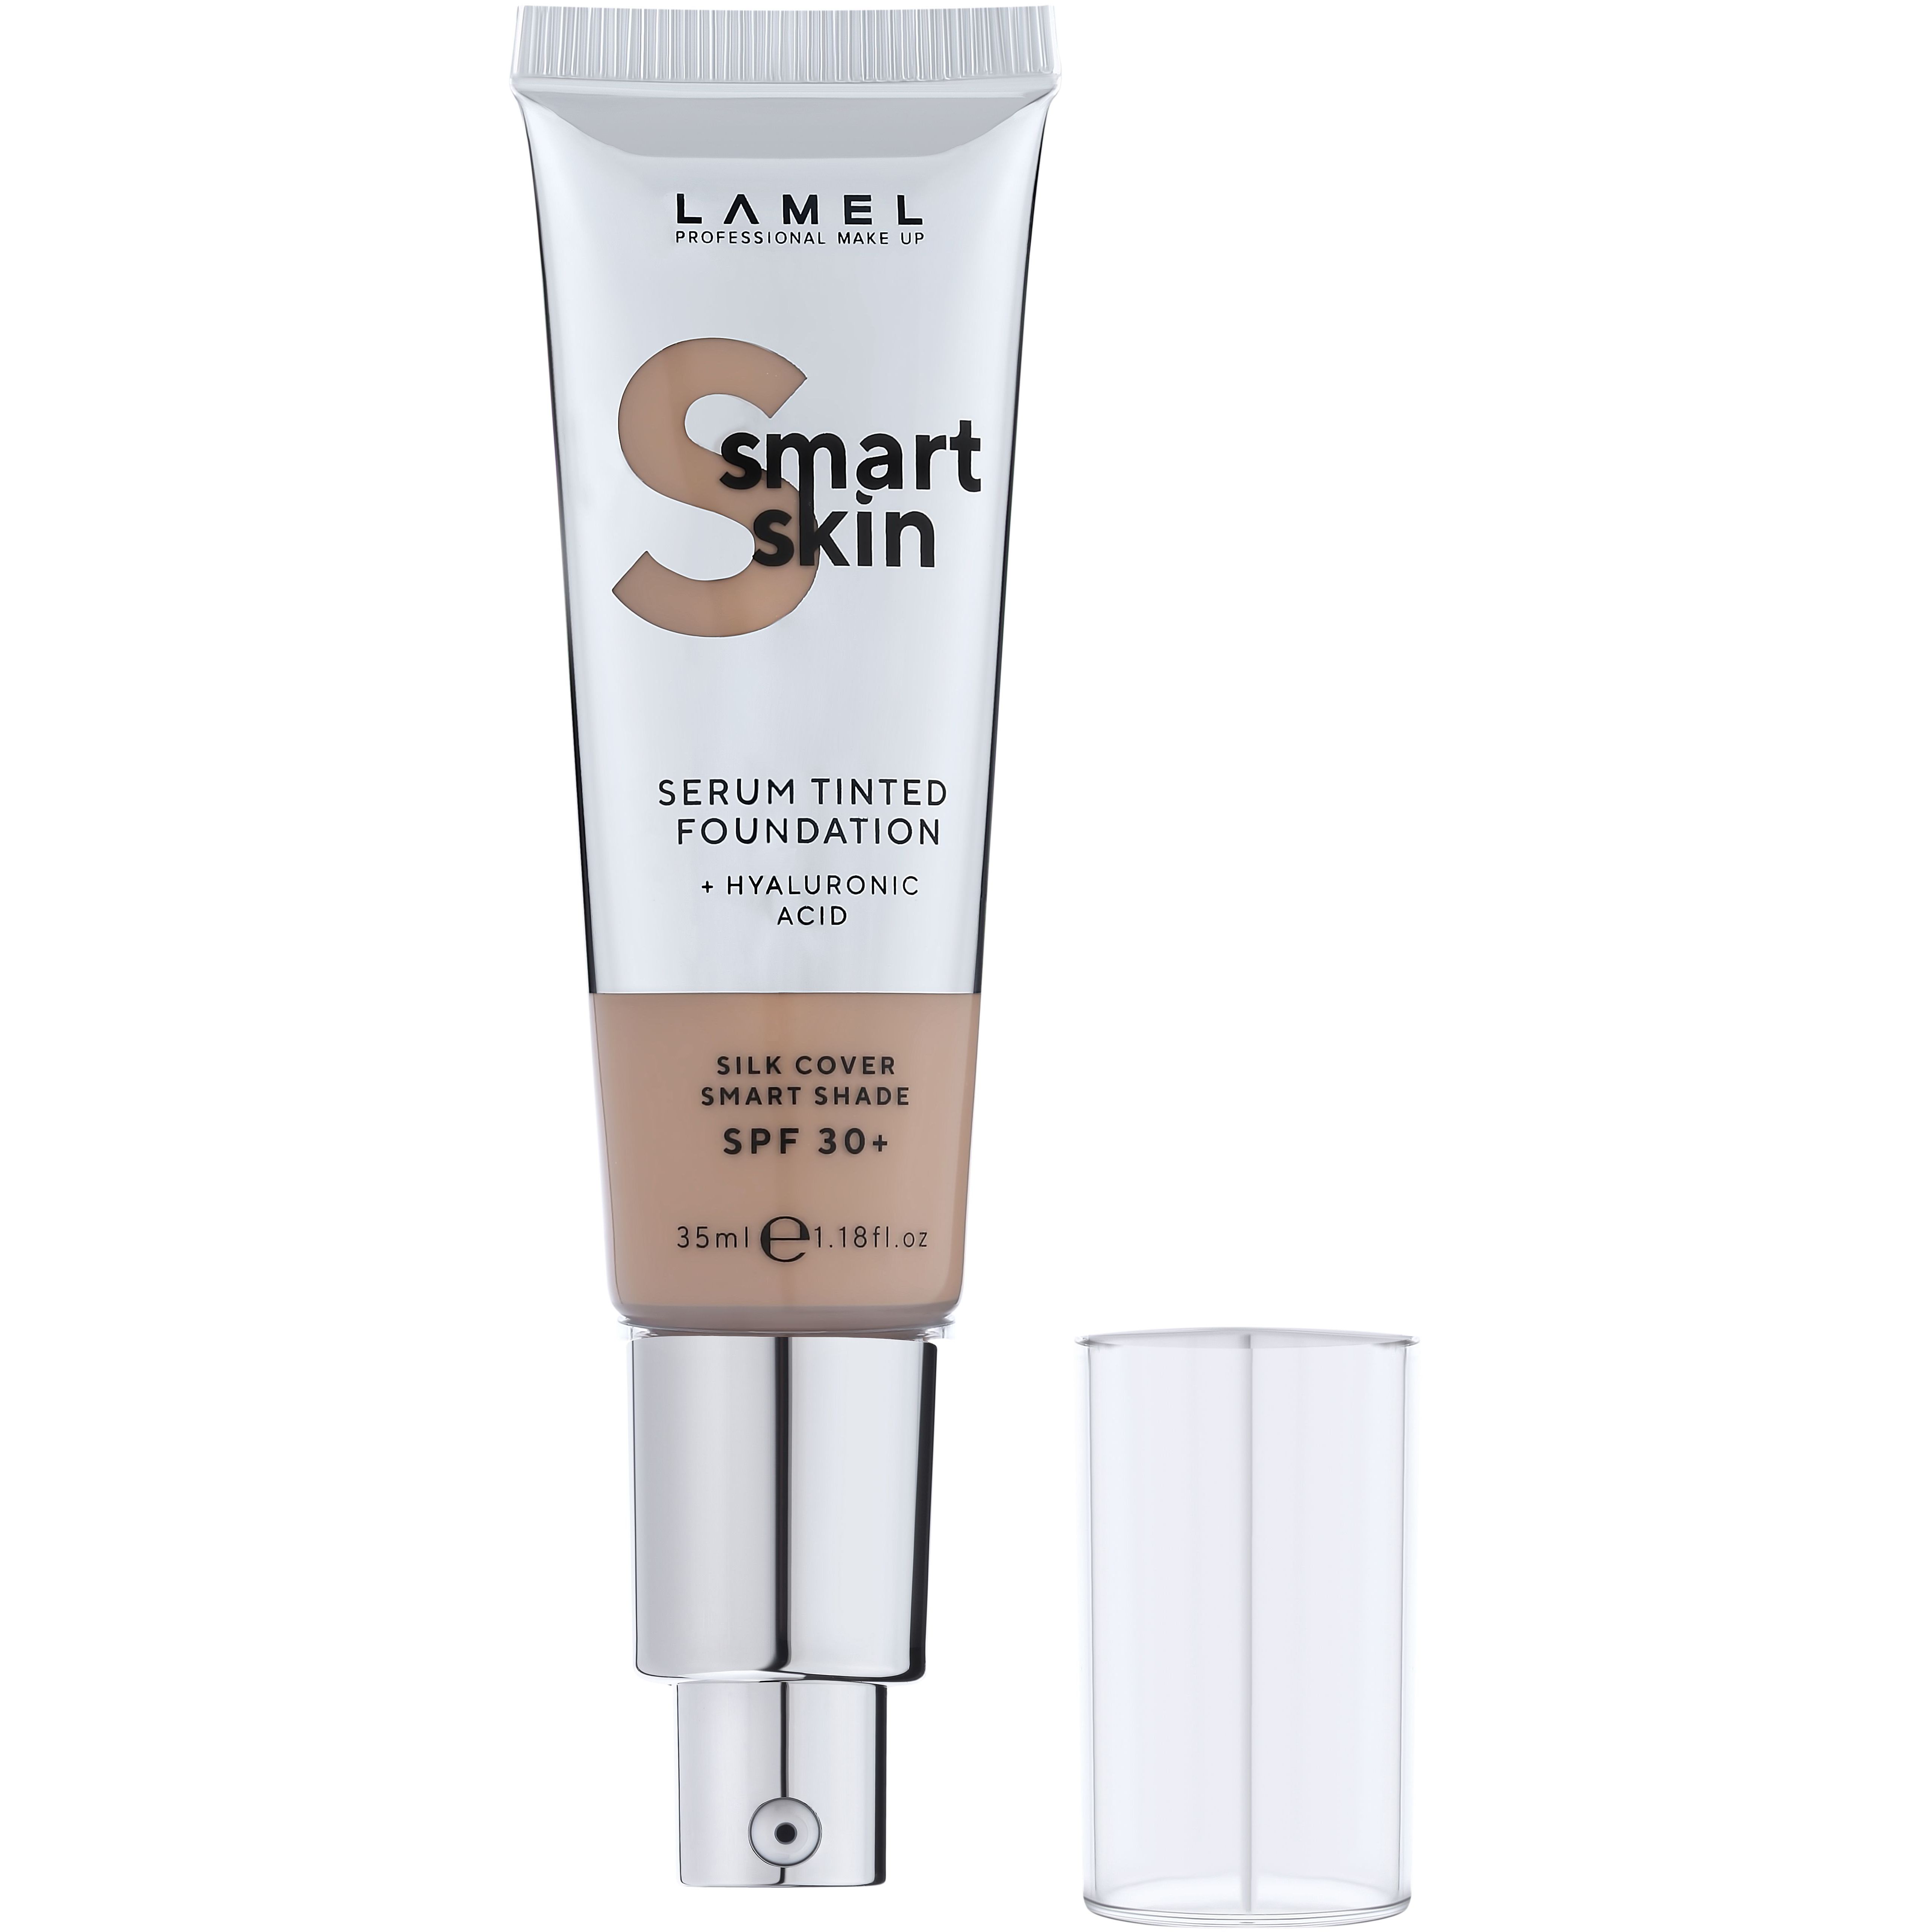 Тональная основа-сыворотка Lamel Smart Skin Serum Tinted Foundation тон 404, 35 мл - фото 3